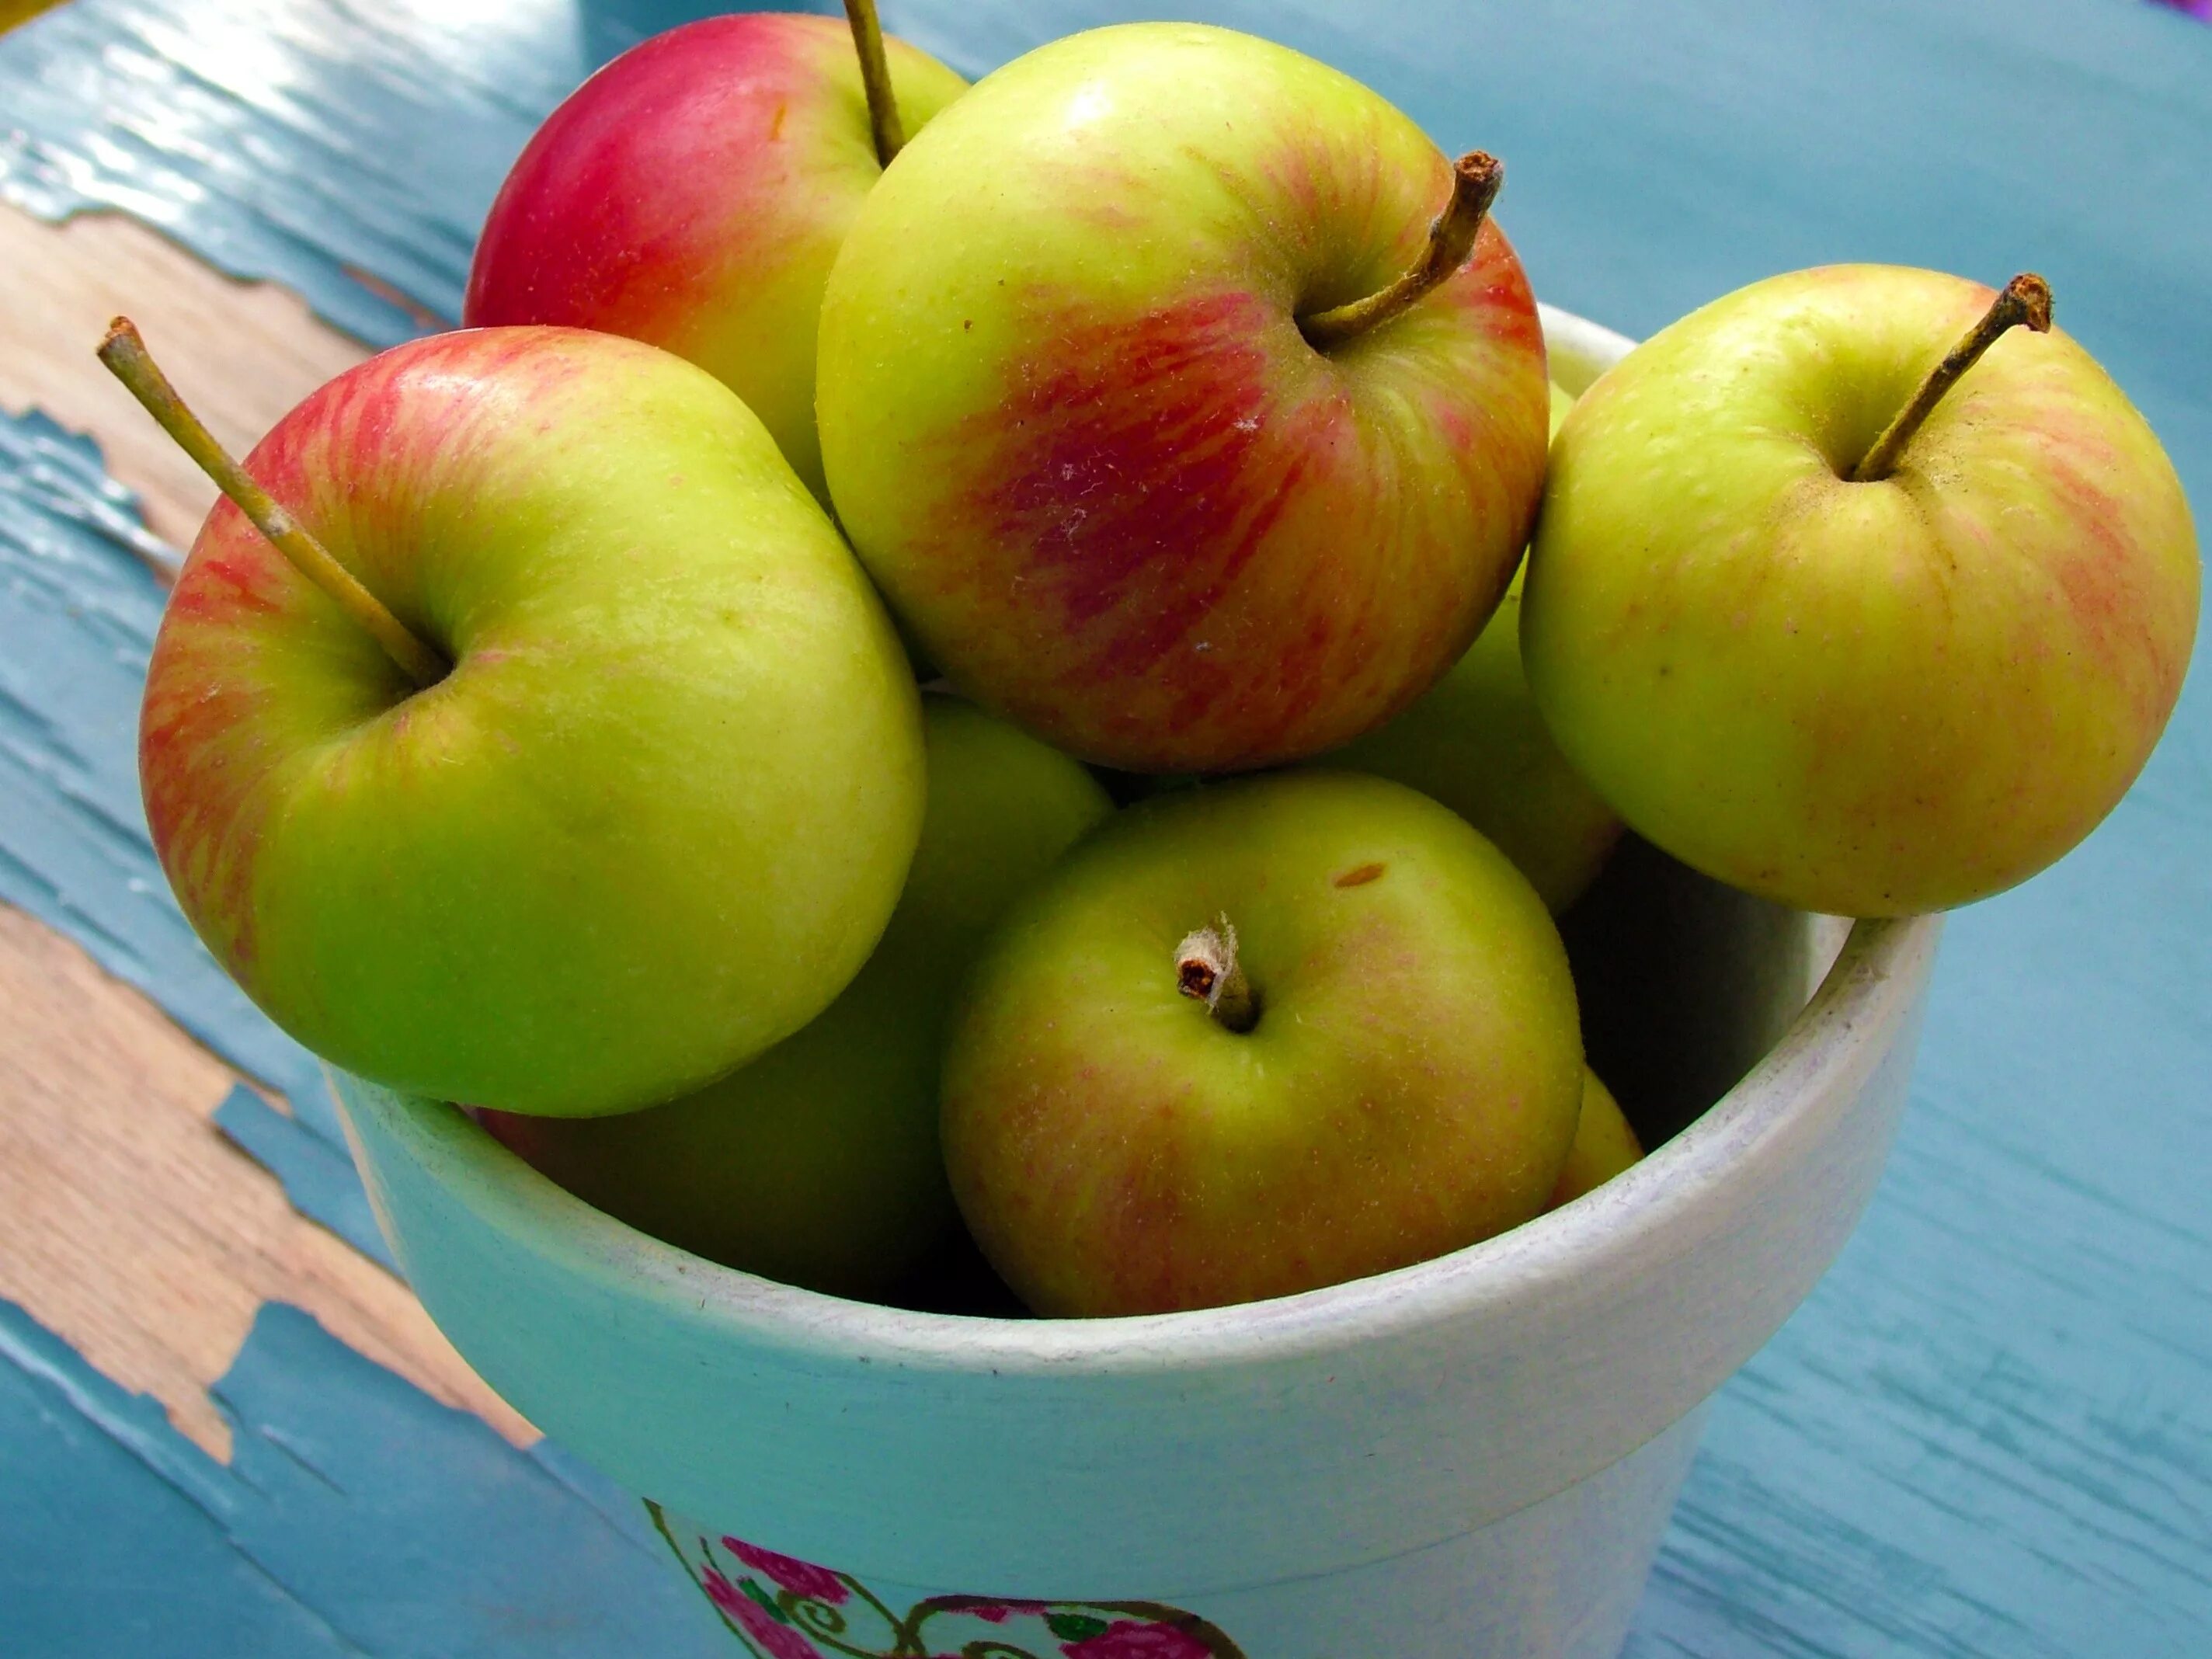 В 2 вазах по 18 яблок. Сорт яблок ГРЕННИ Смит. Яблоки красные. Яблоки зеленые. Яблоки красные желтые зеленые.